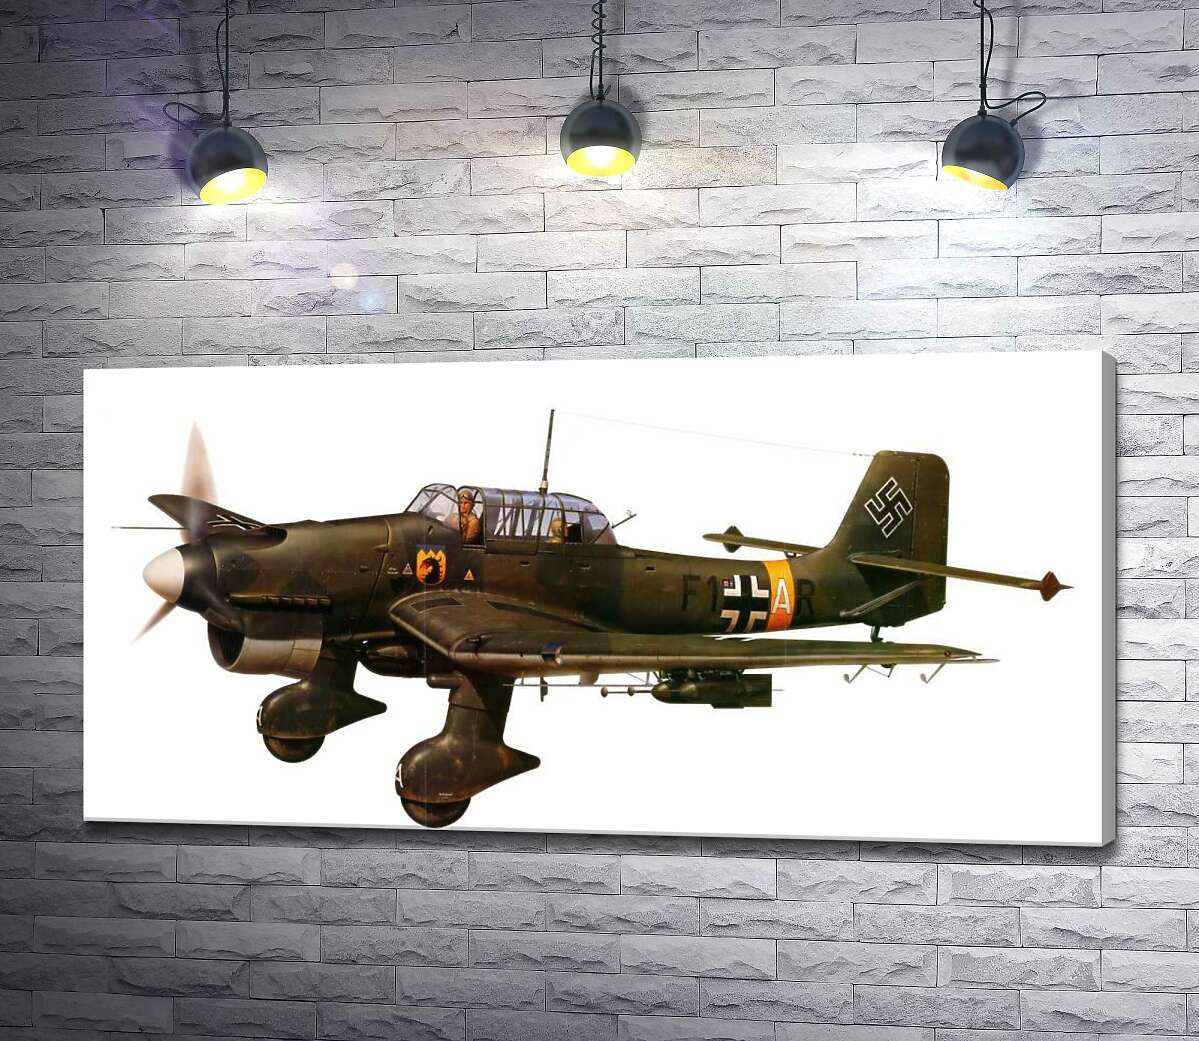 картина "Штука" (Junkers Ju 87) немецкий пикирующий бомбардировщик времен Второй мировой войны